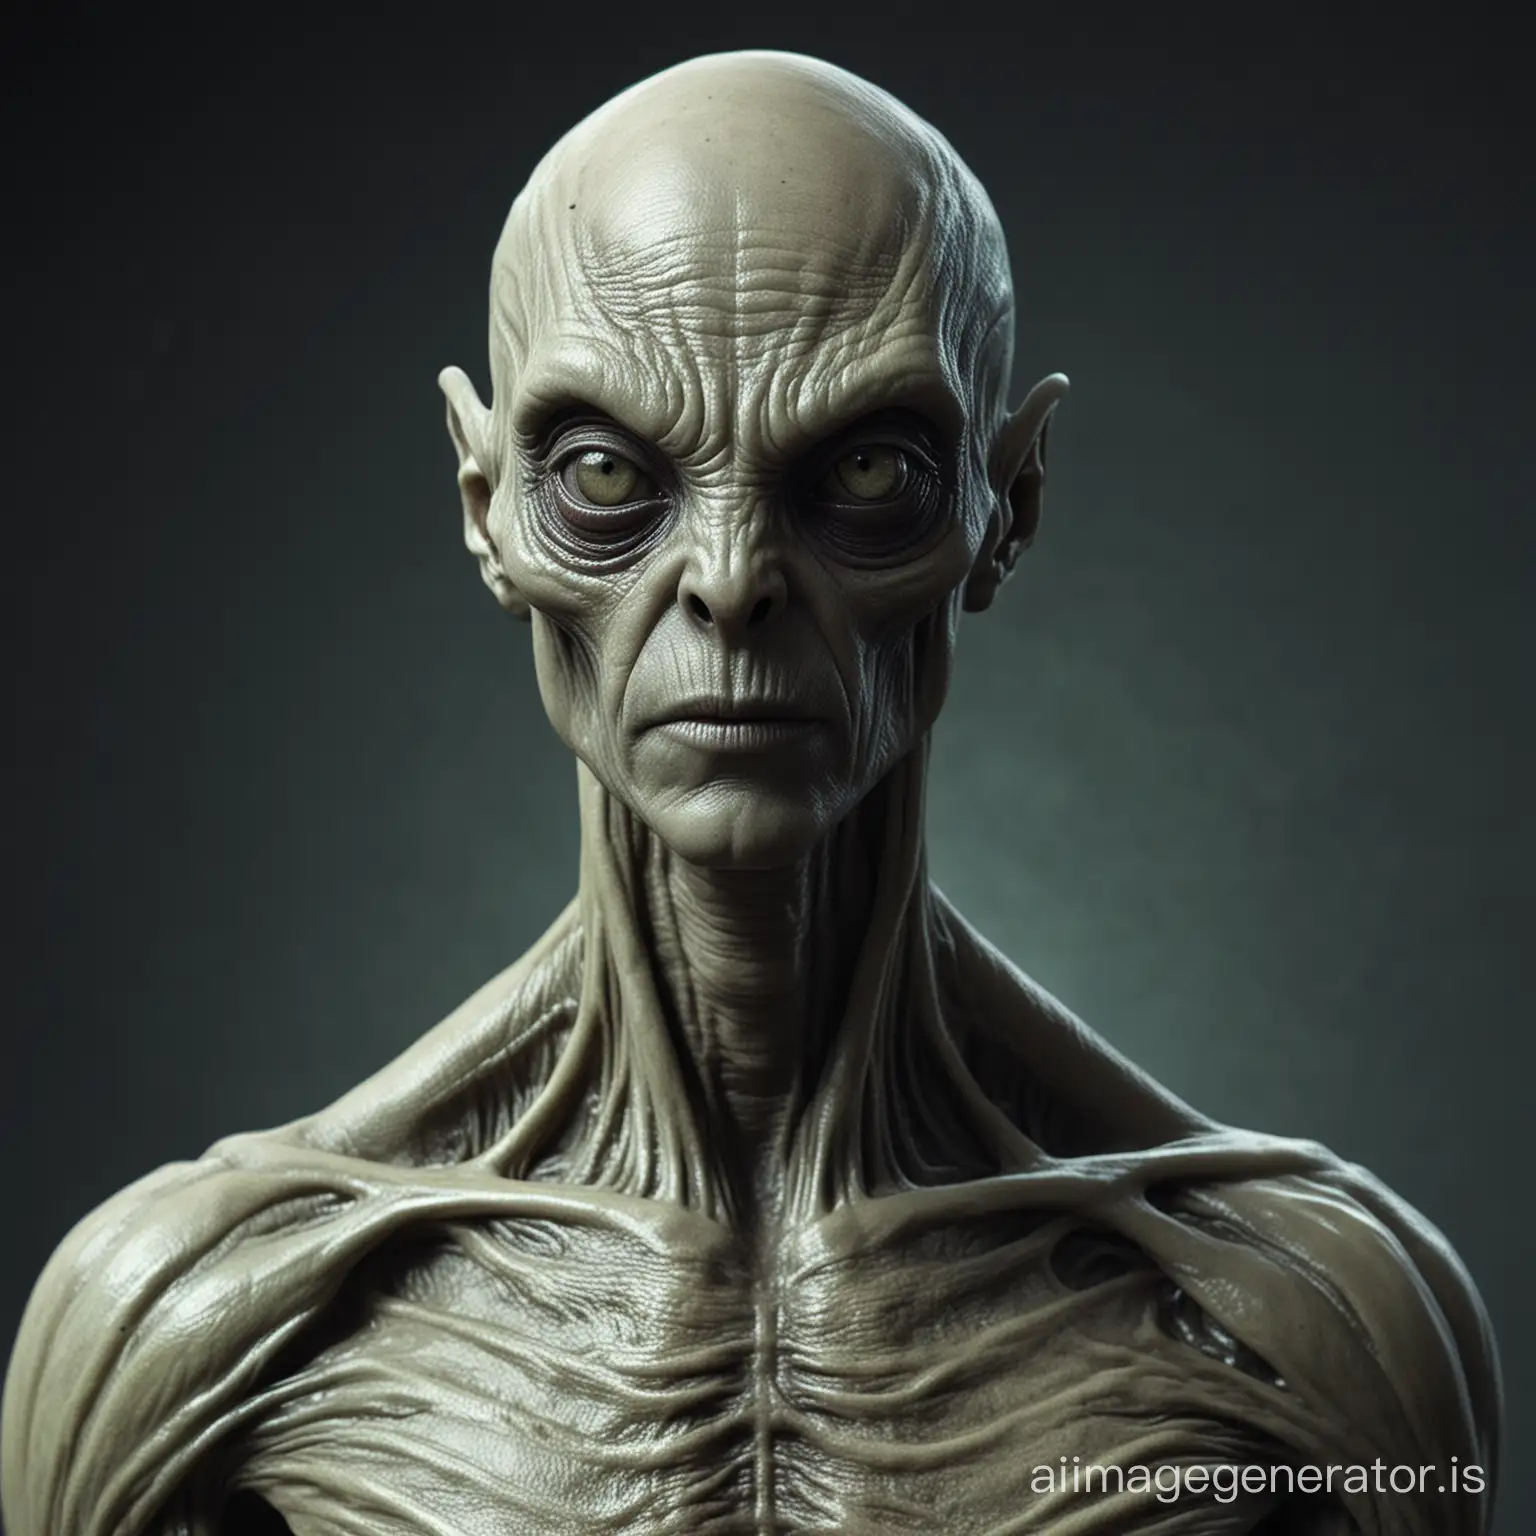 A male creepy alien, in human body.

